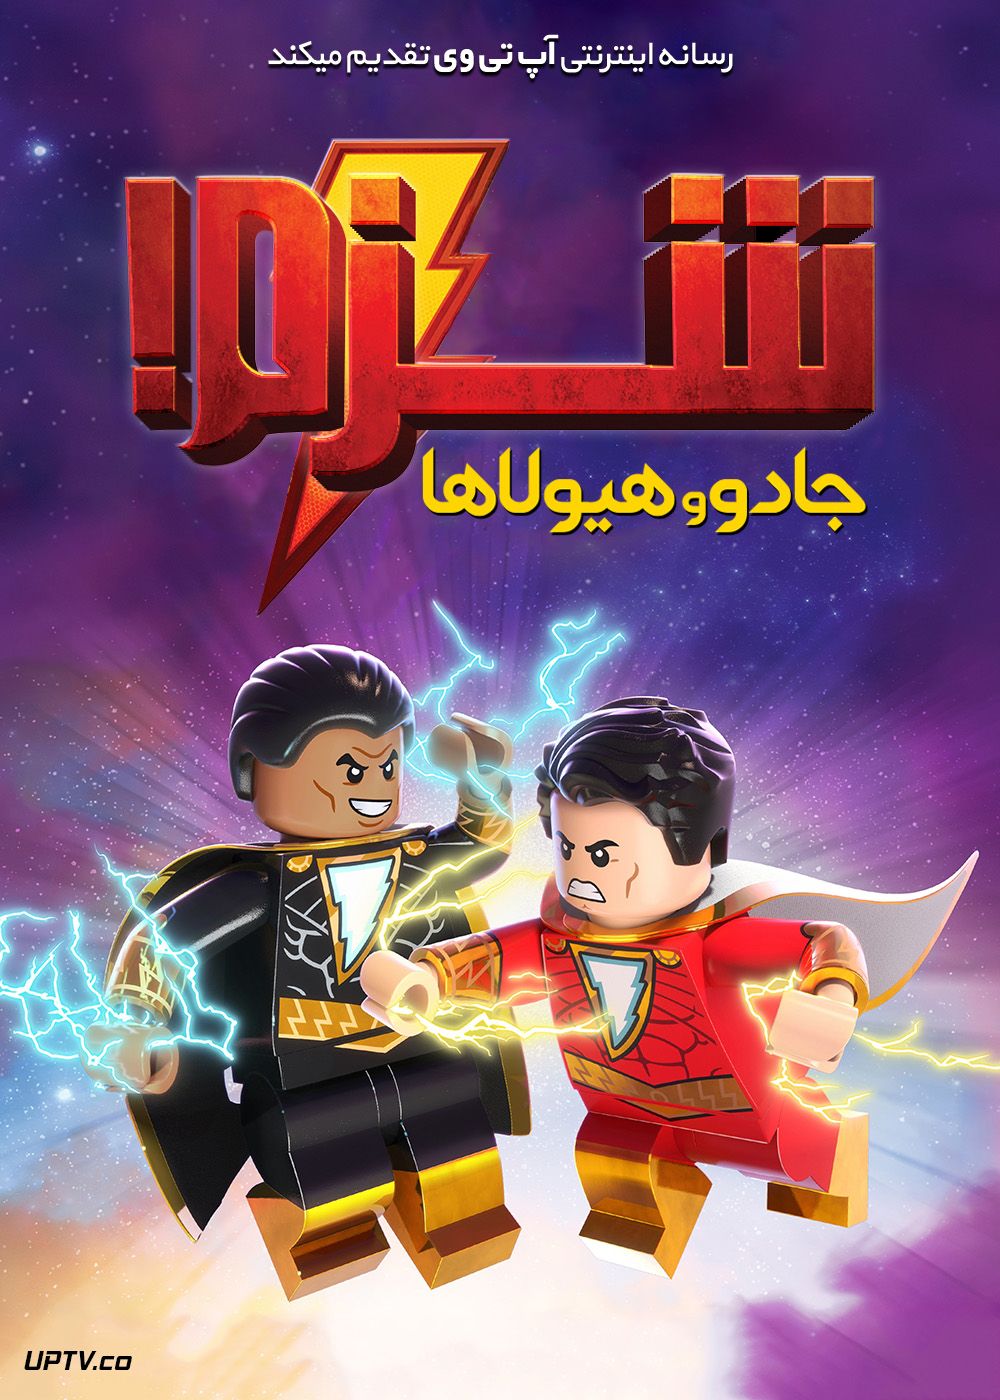 دانلود انیمیشن لگو شزم Lego DC Shazam 2020 با دوبله فارسی